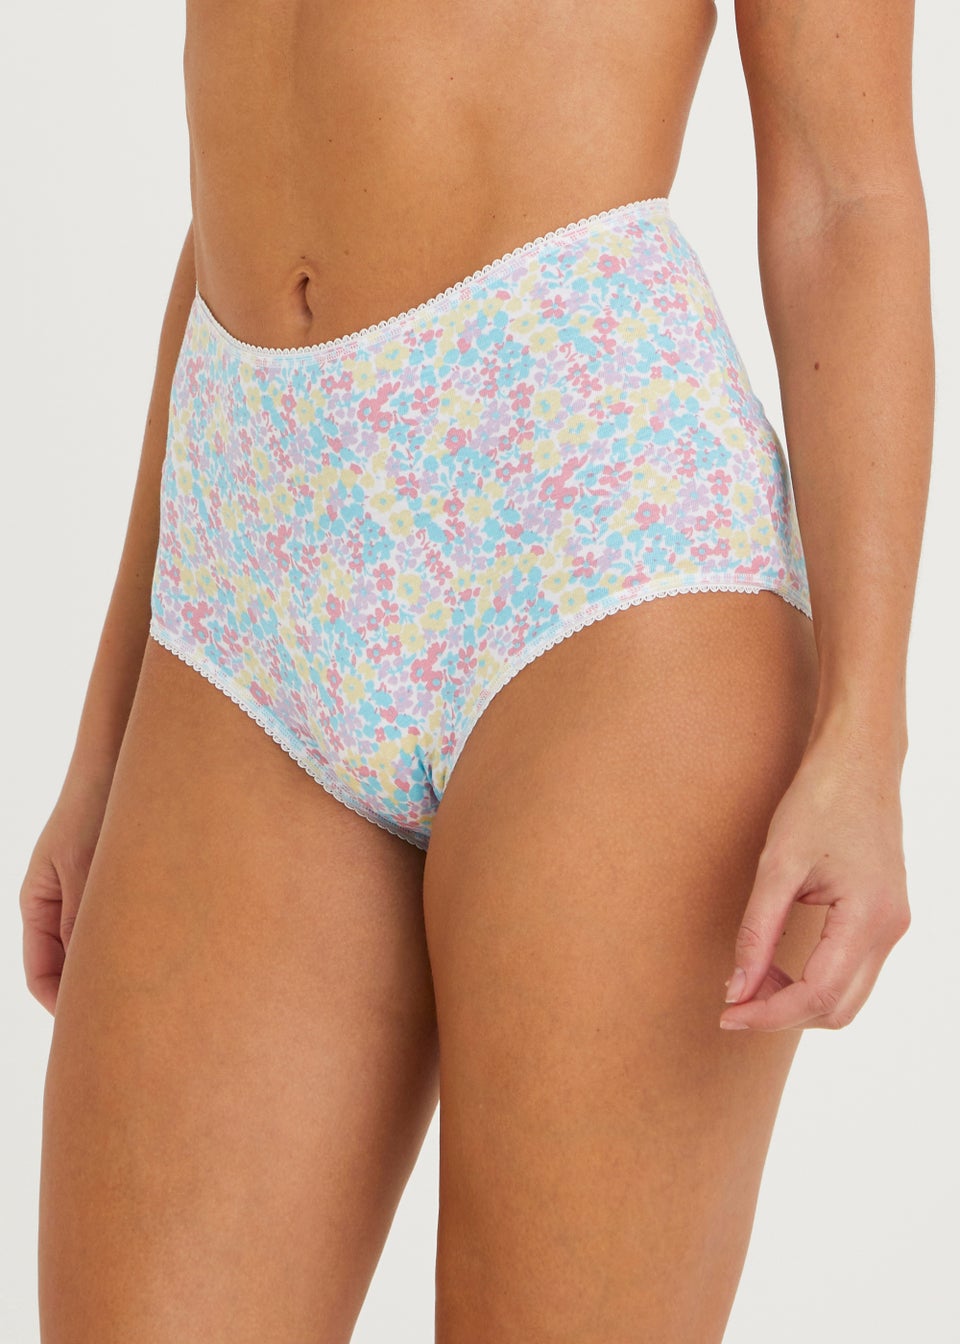 5pack Floral Print Lace Trim Panty Set